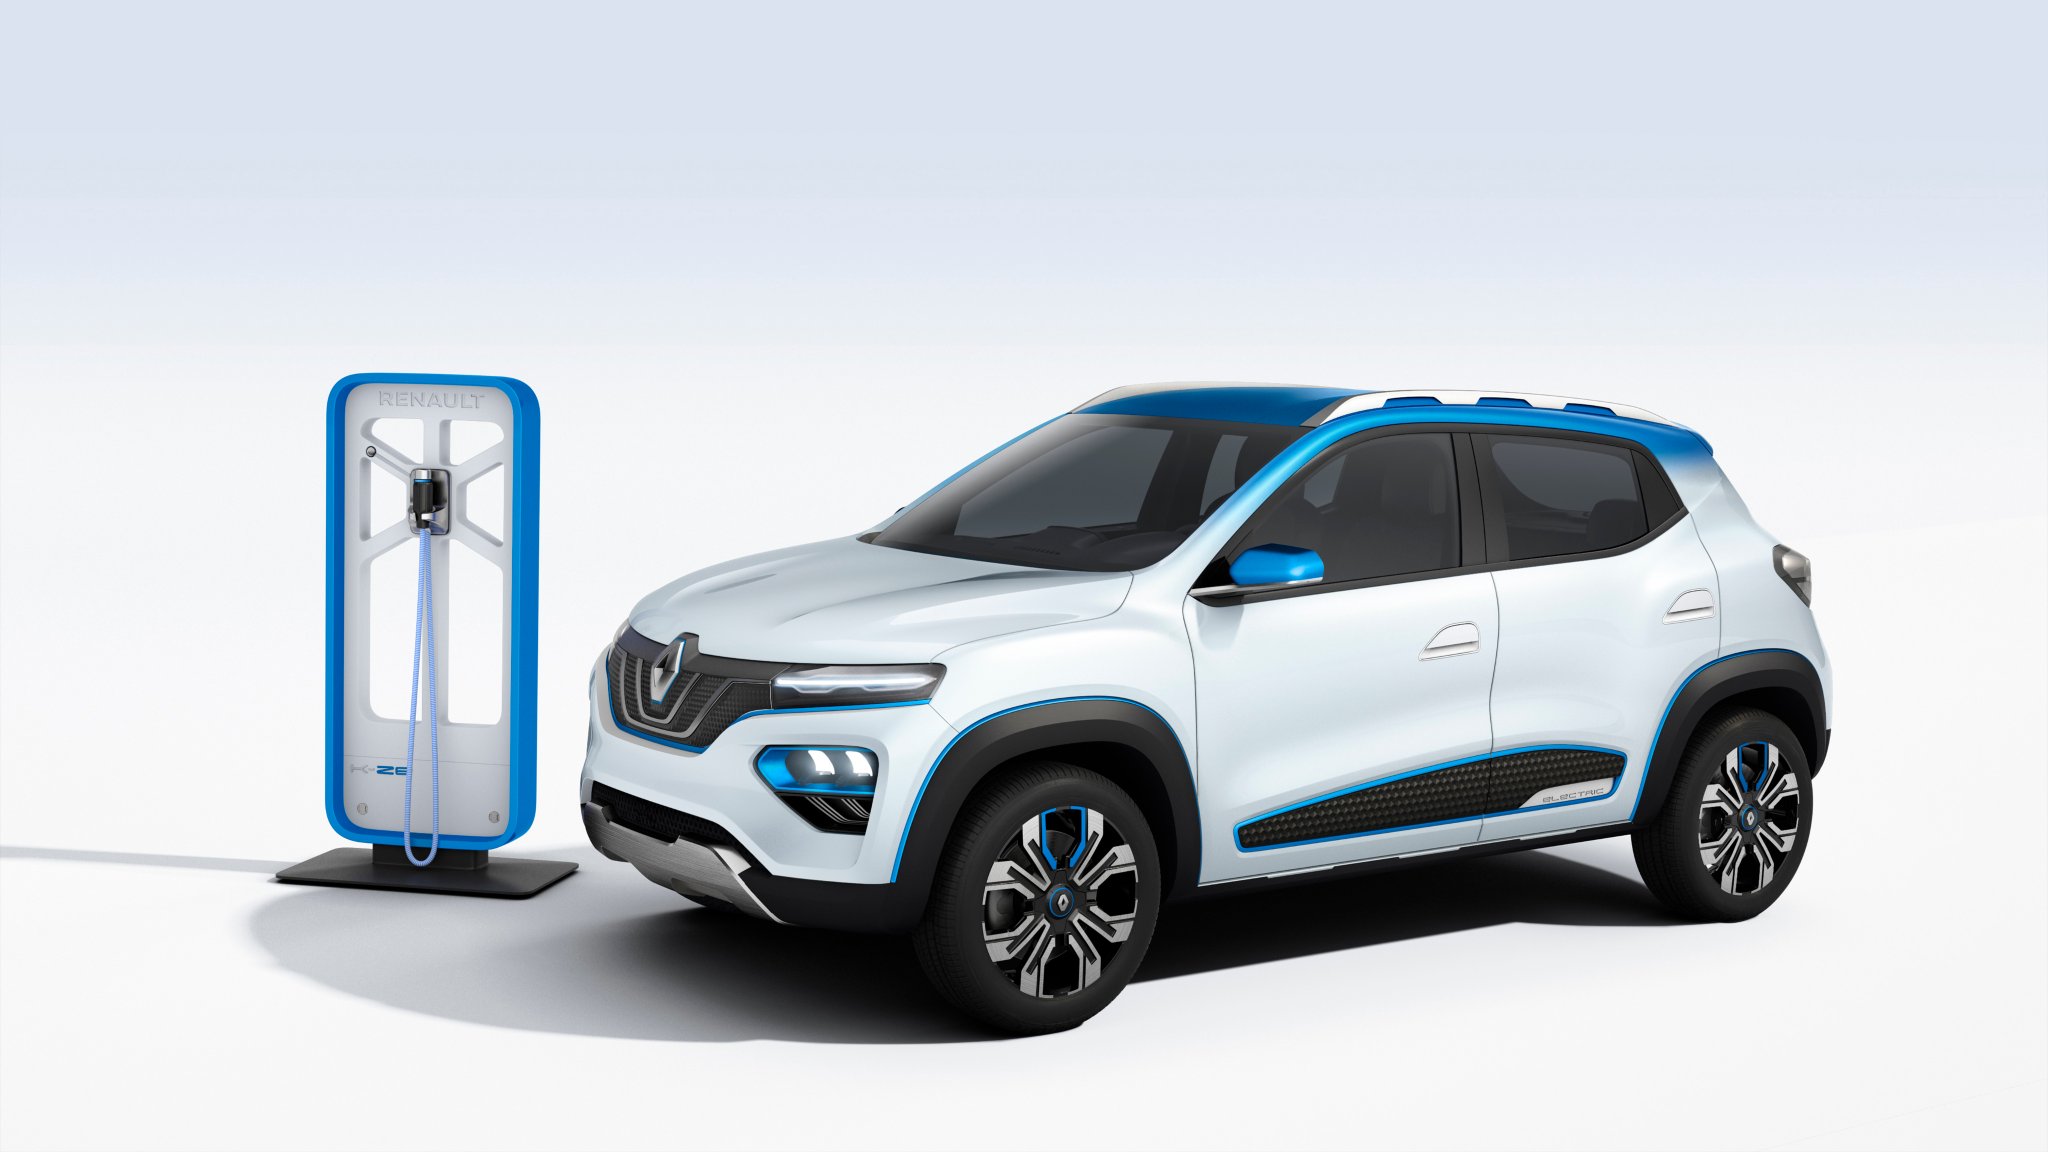 Renault Kze electrique - Article AutoJM